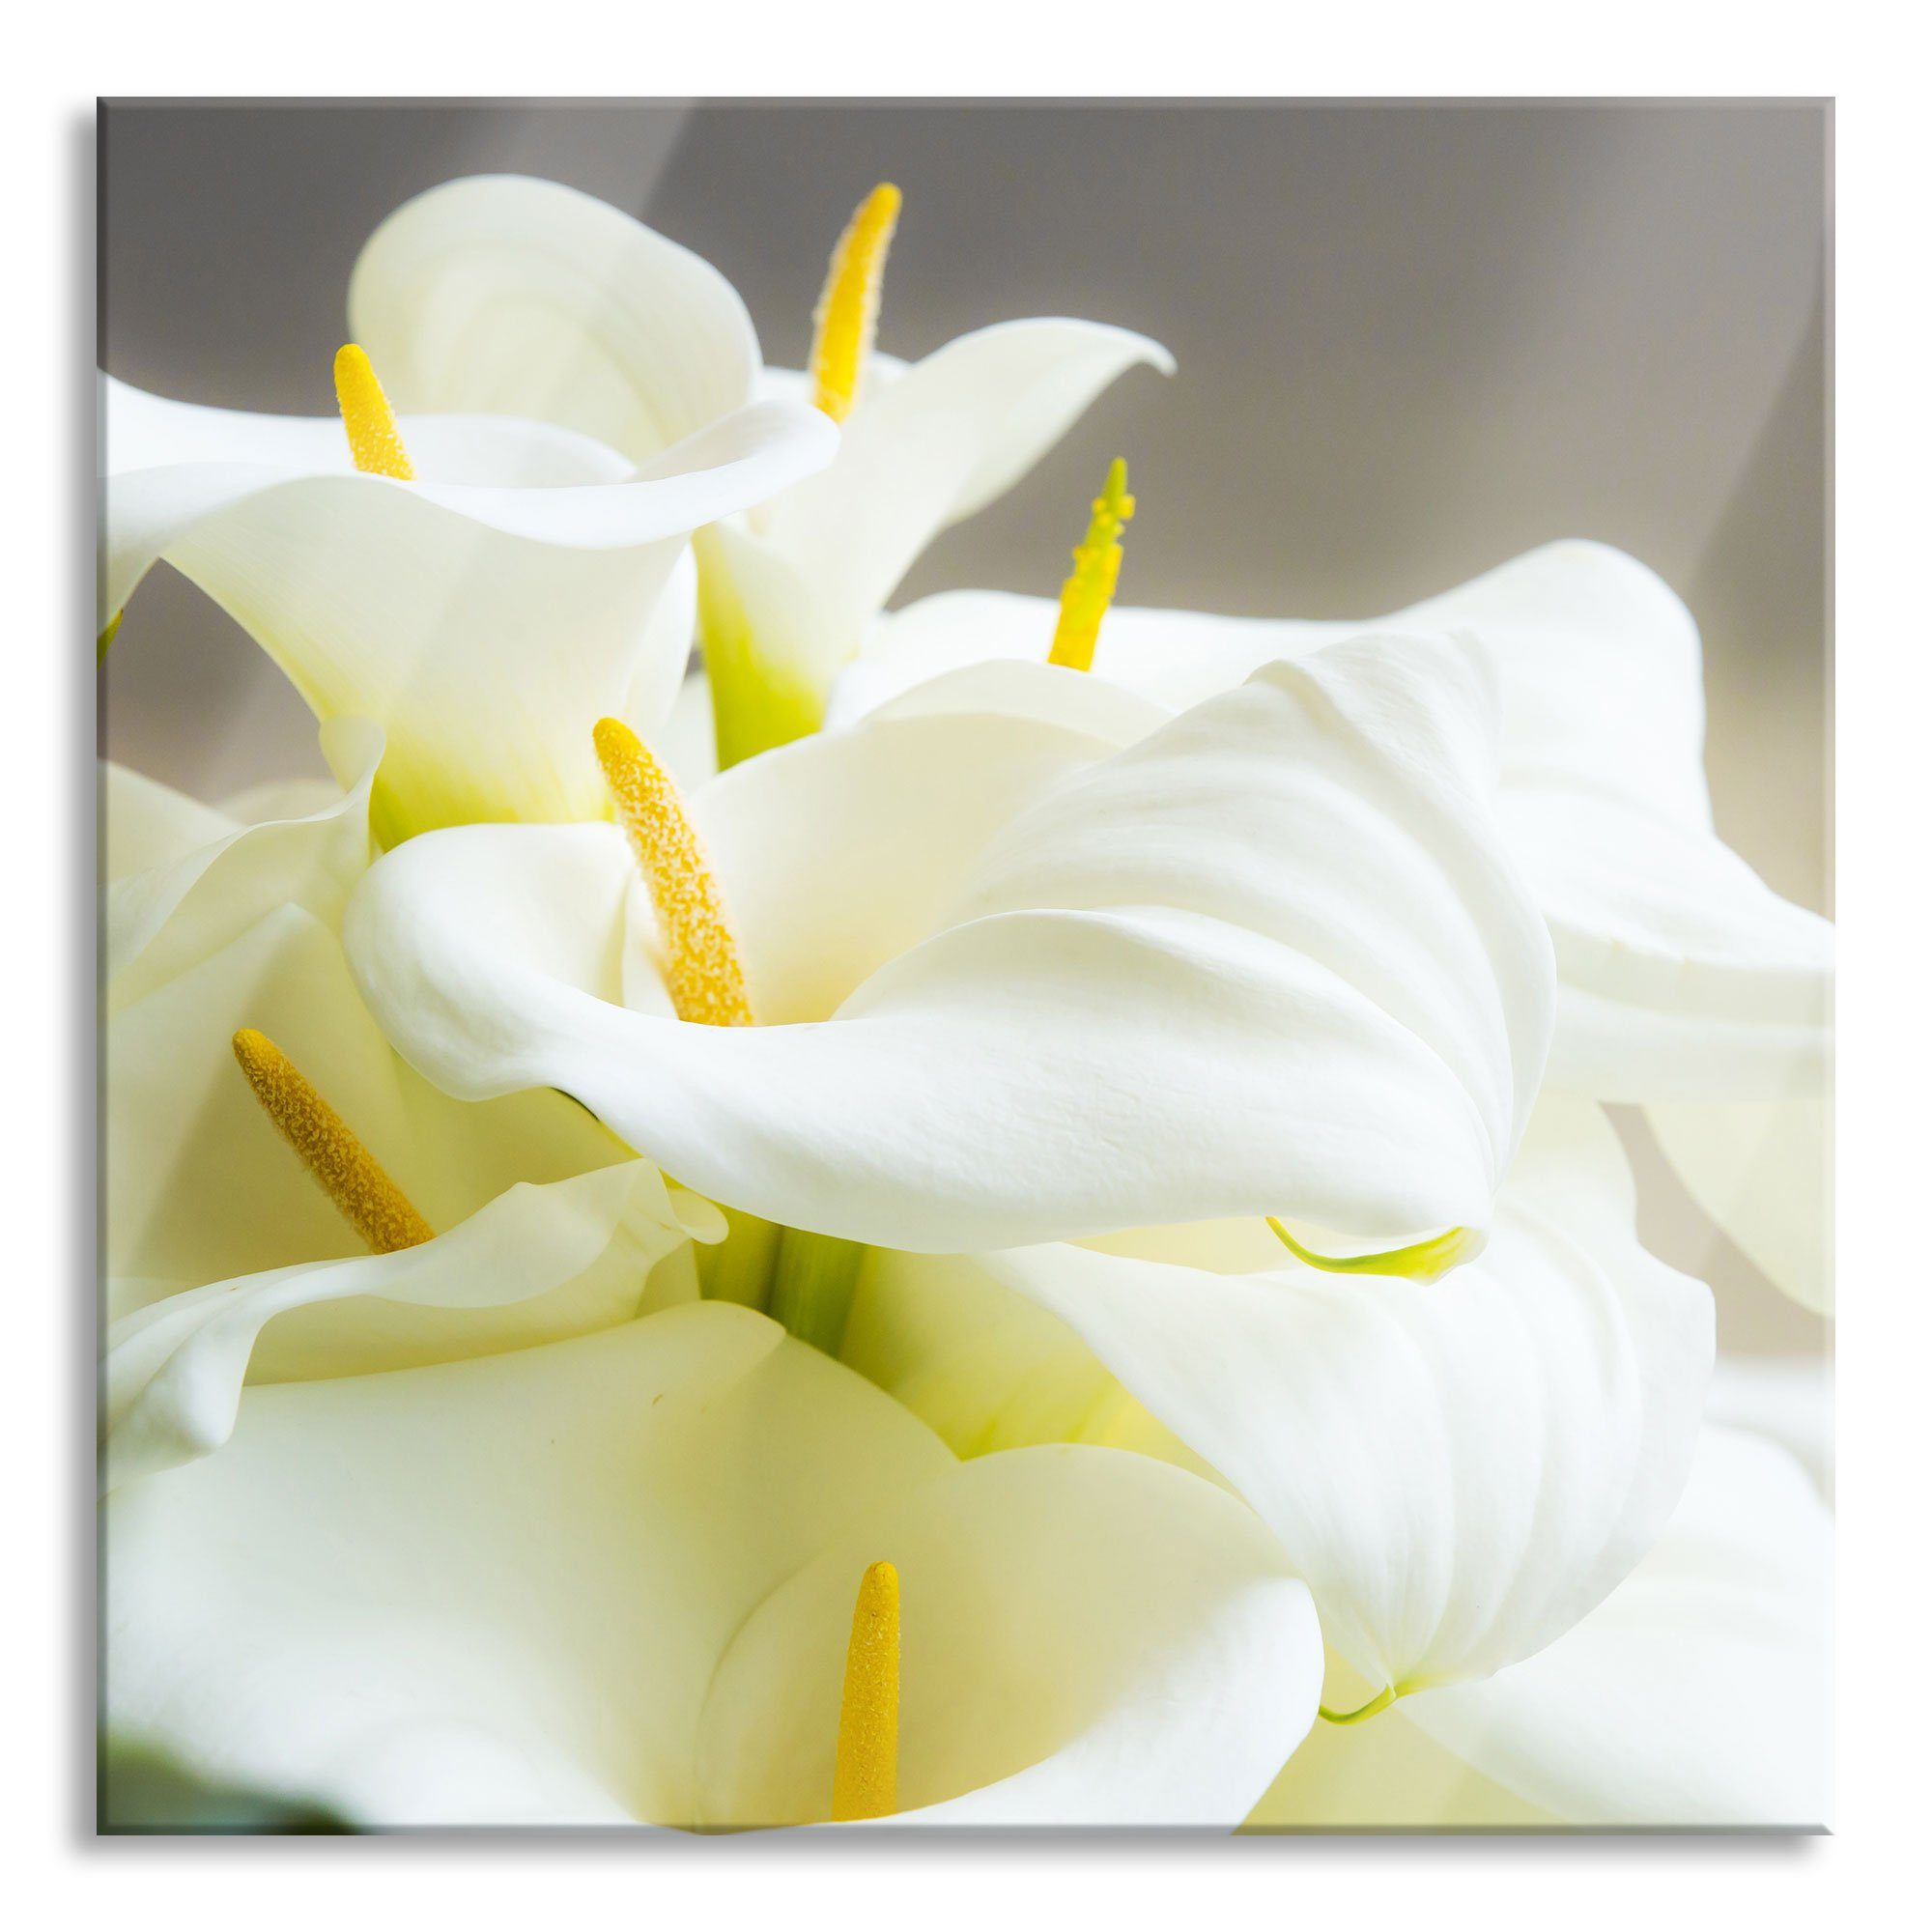 Pixxprint Glasbild Wunderschöne weiße Calla Lilien, Wunderschöne weiße Calla Lilien (1 St), Glasbild aus Echtglas, inkl. Aufhängungen und Abstandshalter